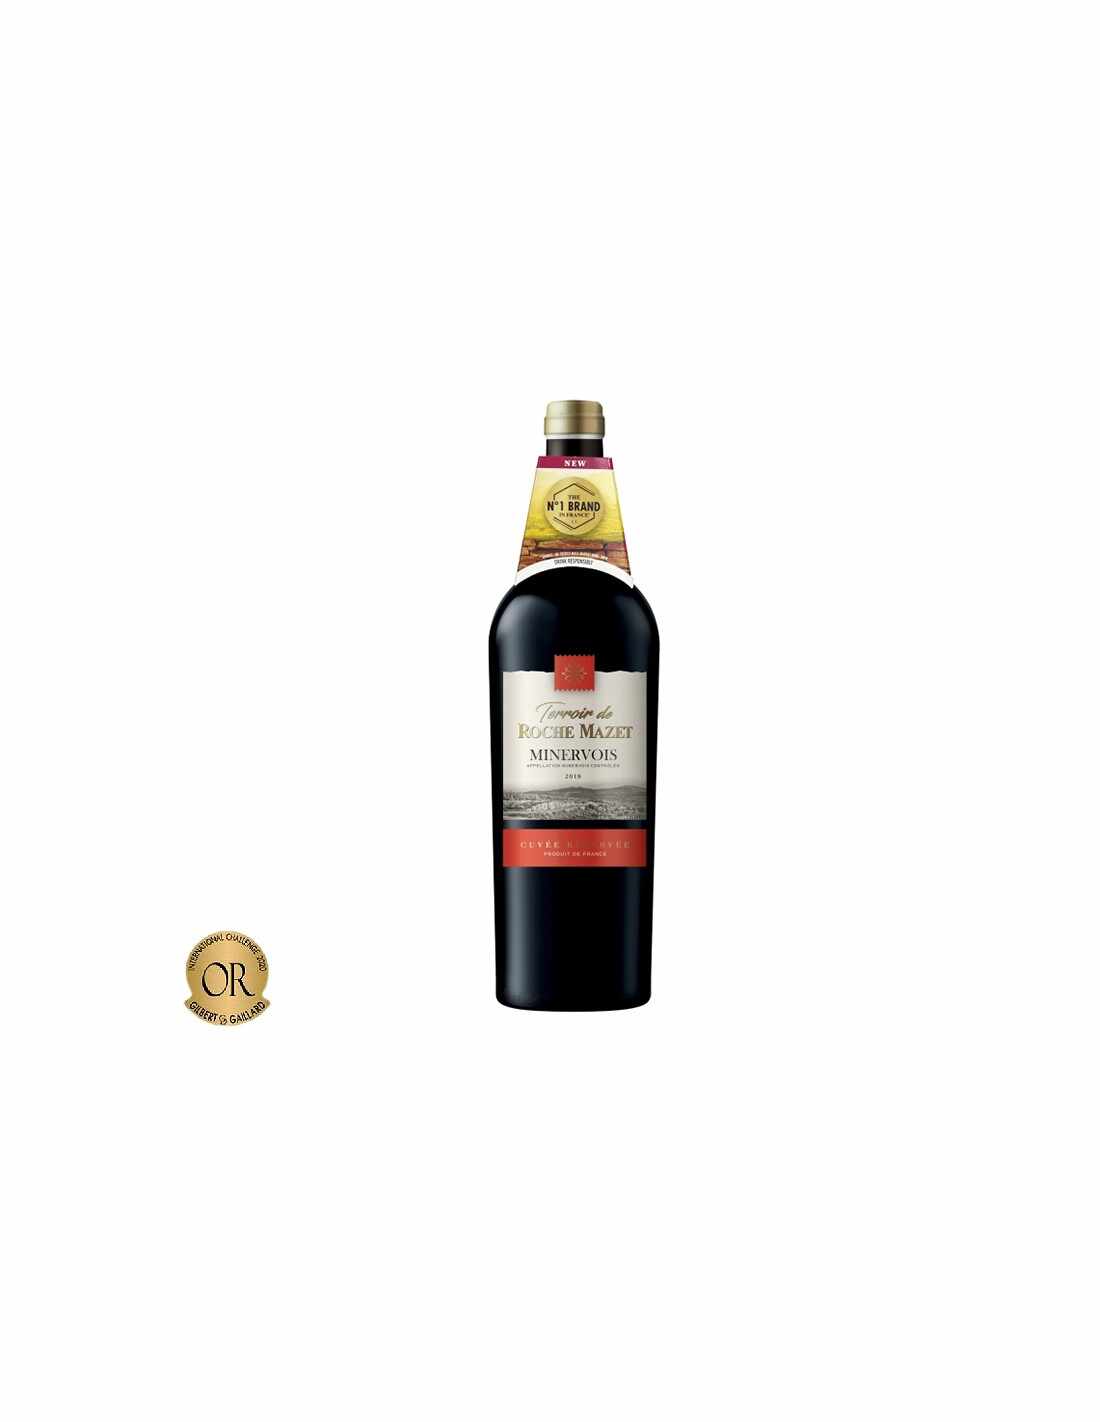 Vin rosu sec, Cupaj, Terroir de Roche Mazet, Minervois Cuvee Reserve, 0.75L, 13.5% alc., Franta